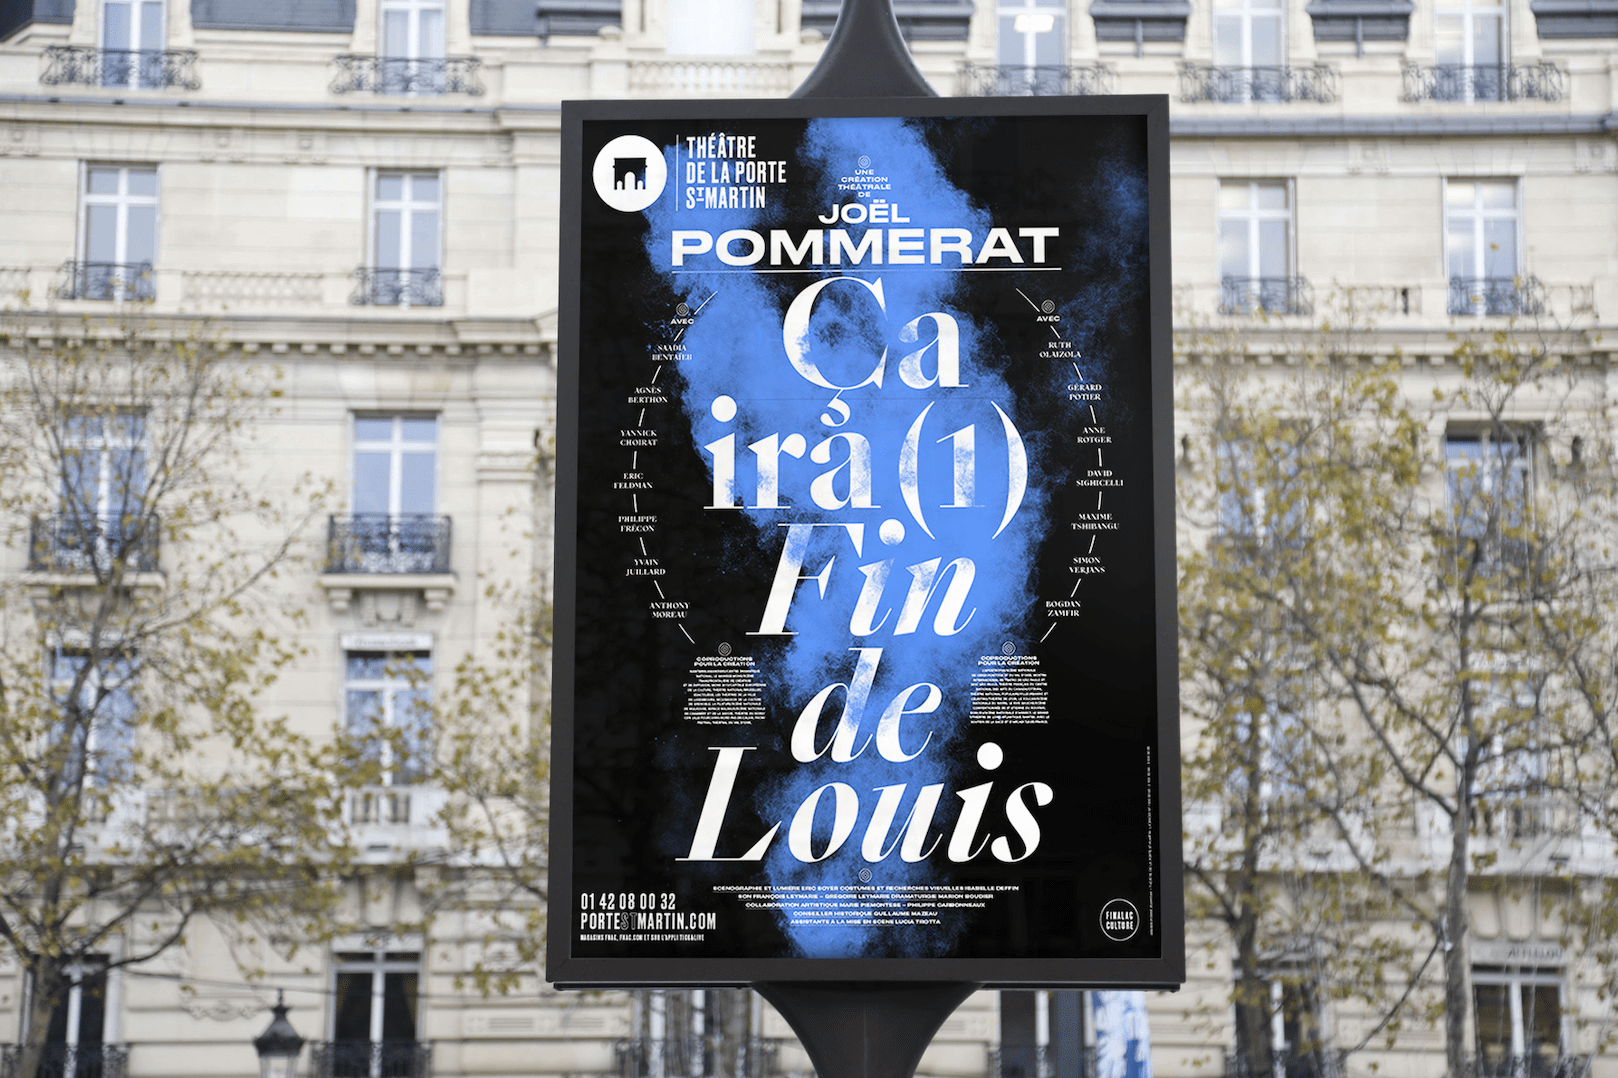 抽象大气的剧院海报设计,巴黎圣马丁剧院宣传海报设计欣赏。